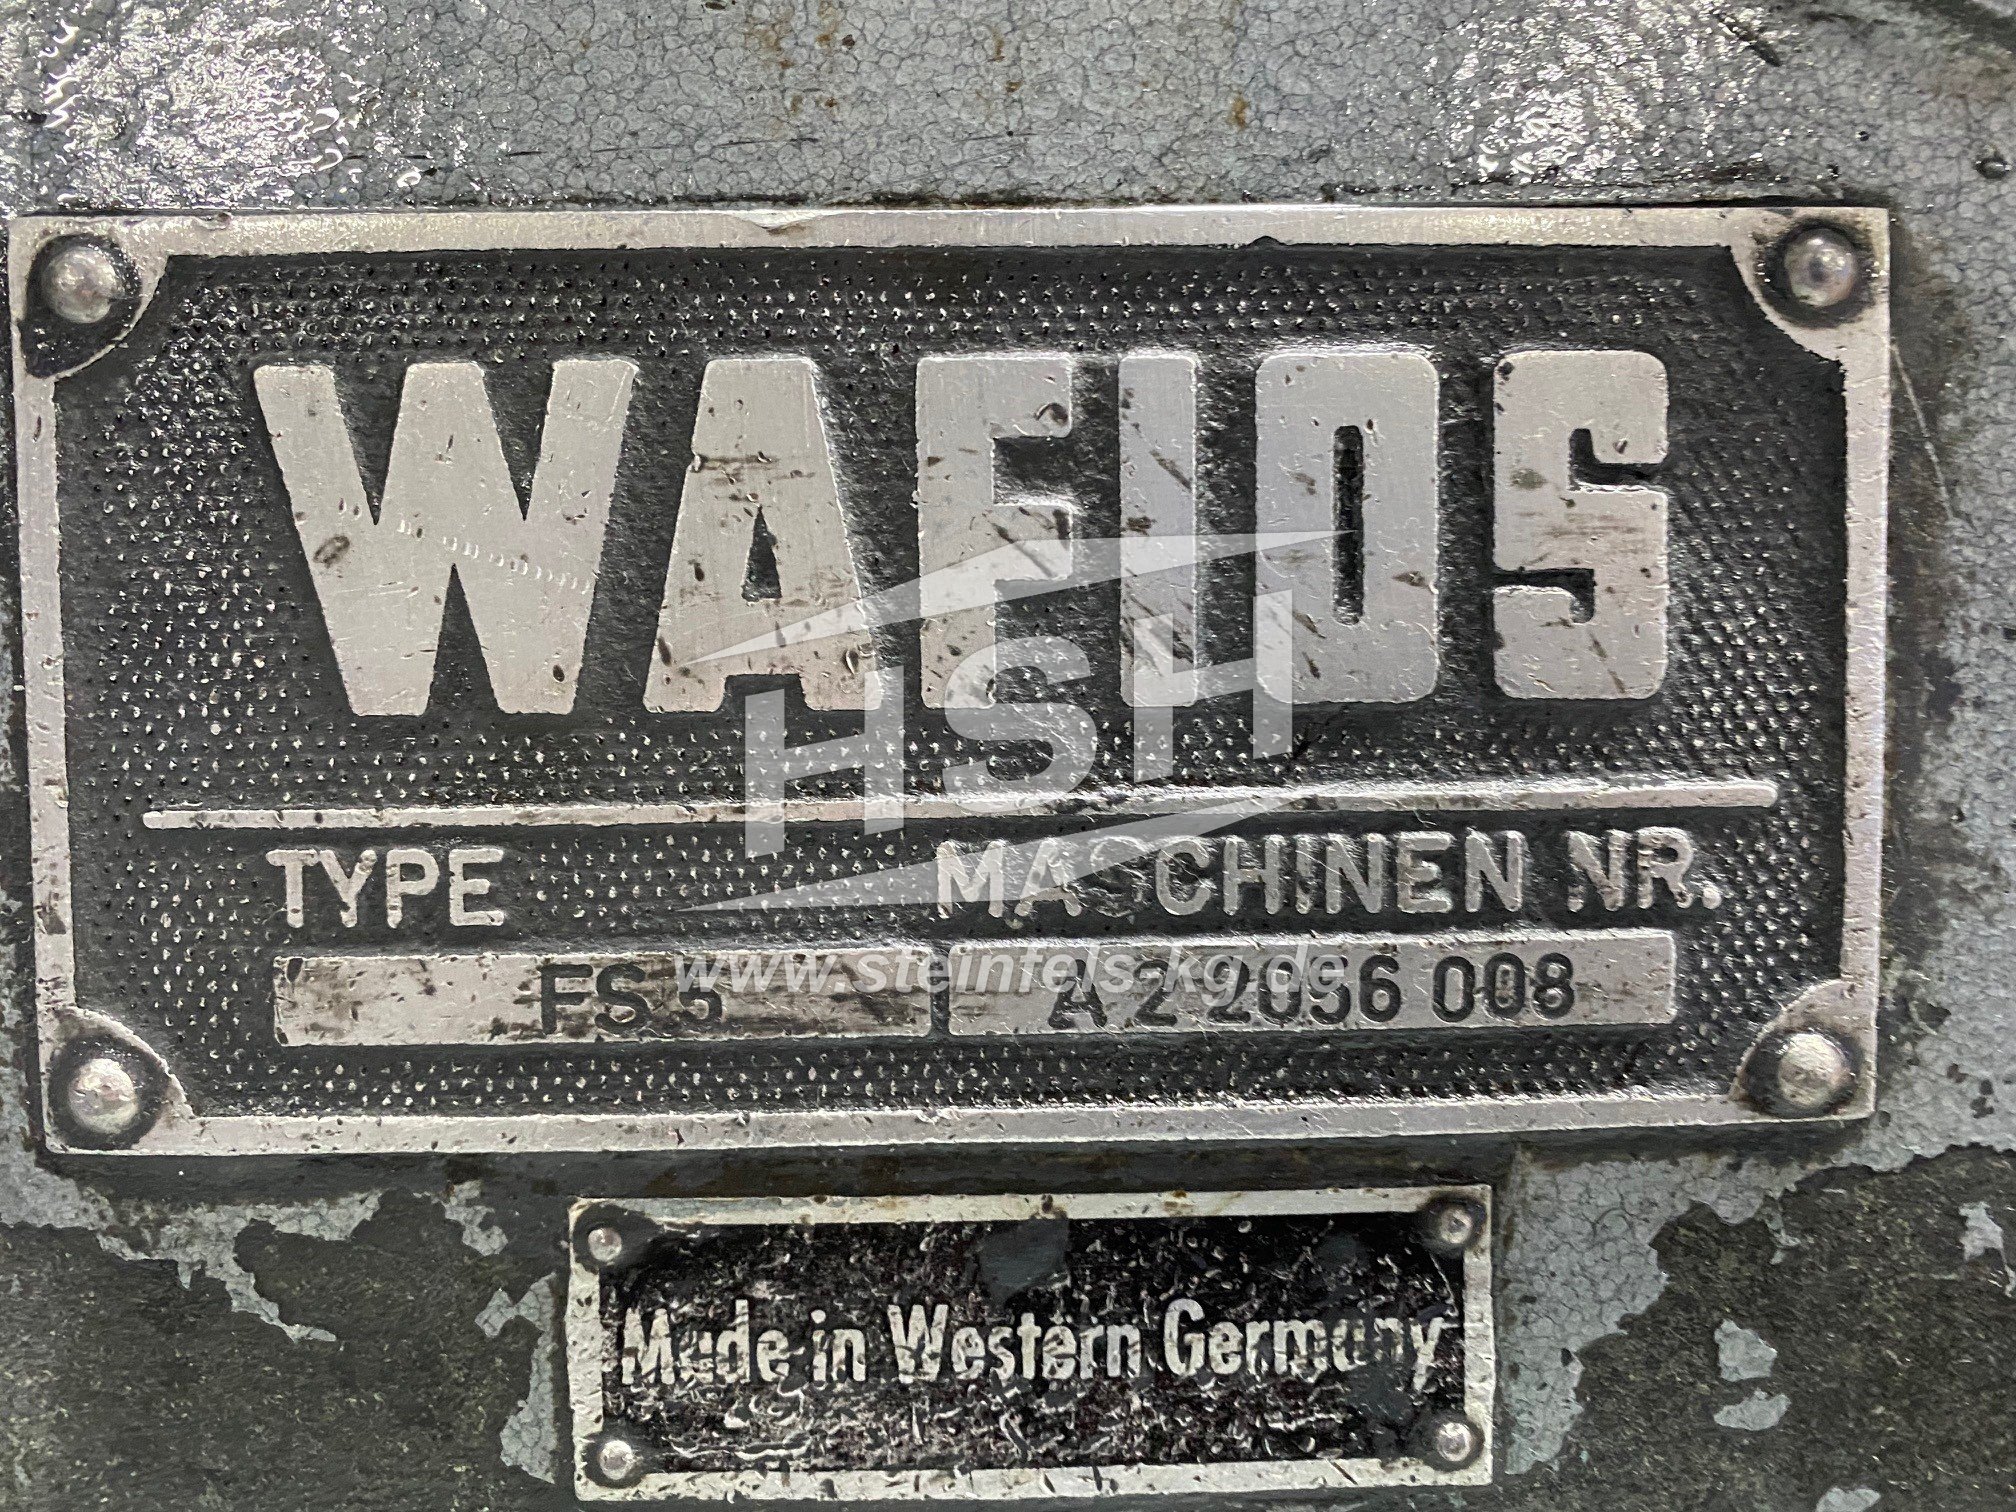 WAFIOS – FS5 – D32L/8001 – 1983 – 0,8-3,6 mm